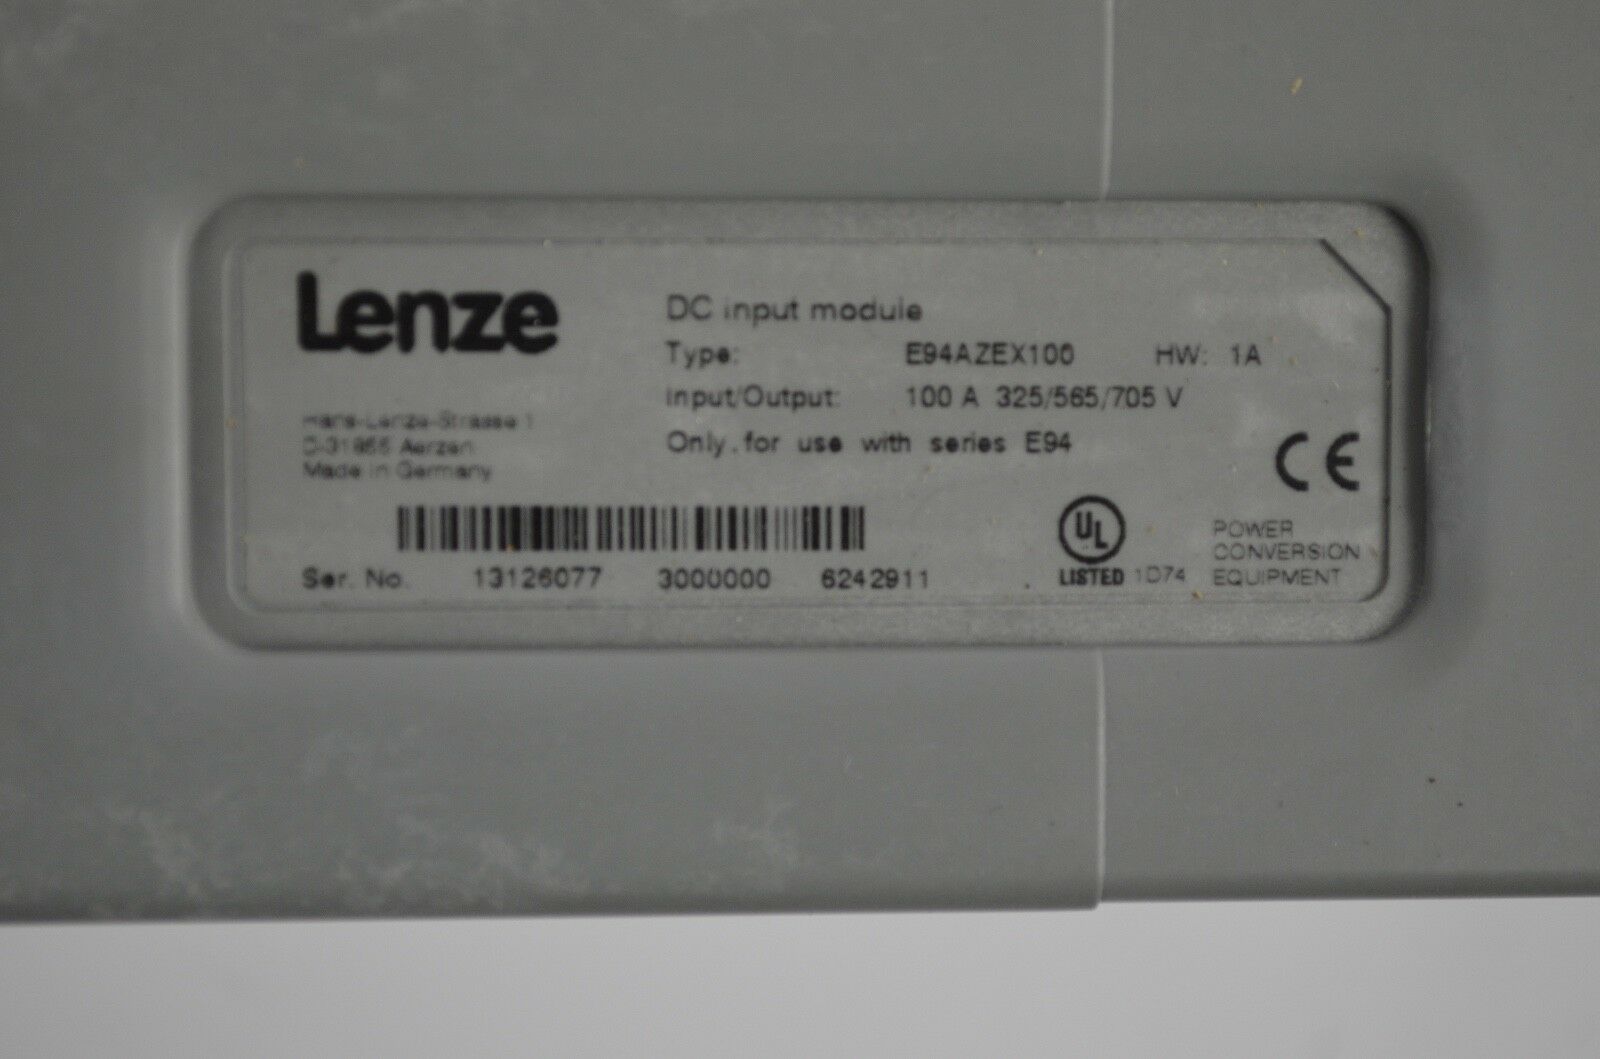 Lenze DC input module E94AZEX100